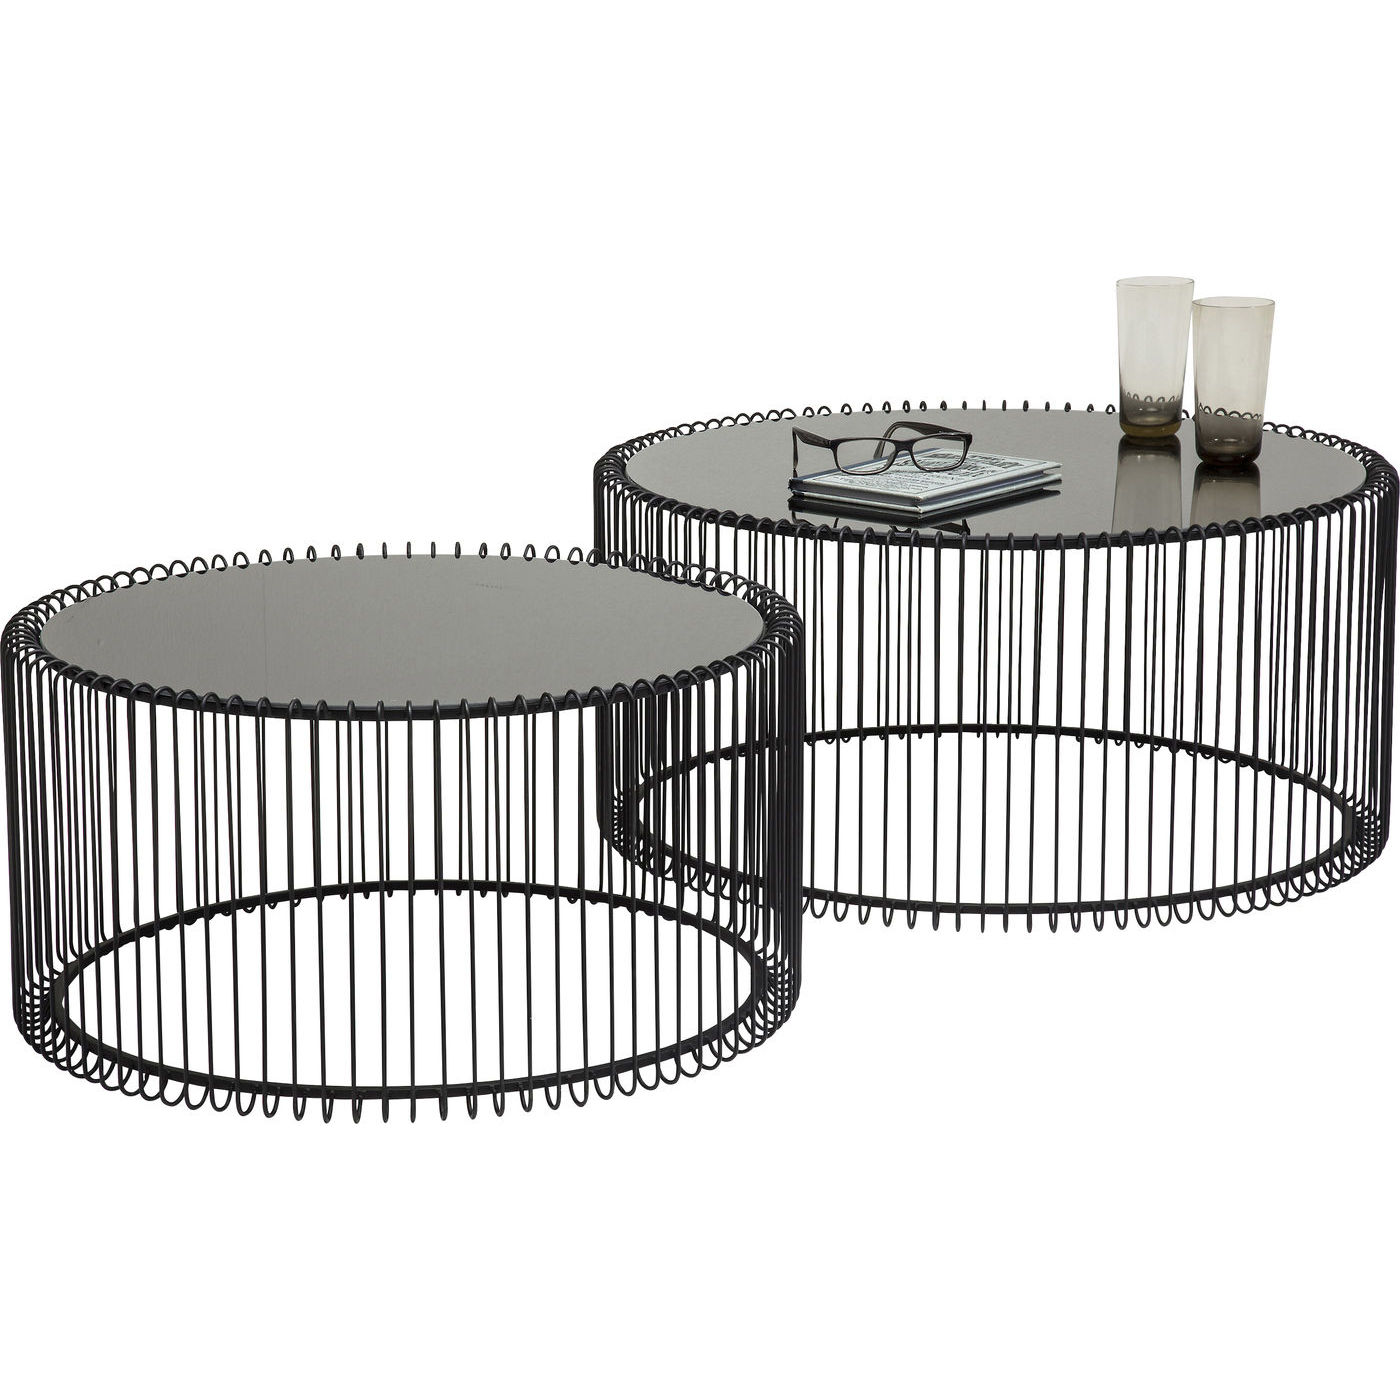 KARE DESIGN Wire Black sofabord - klart glas/sort stål, rundt (2/sæt)